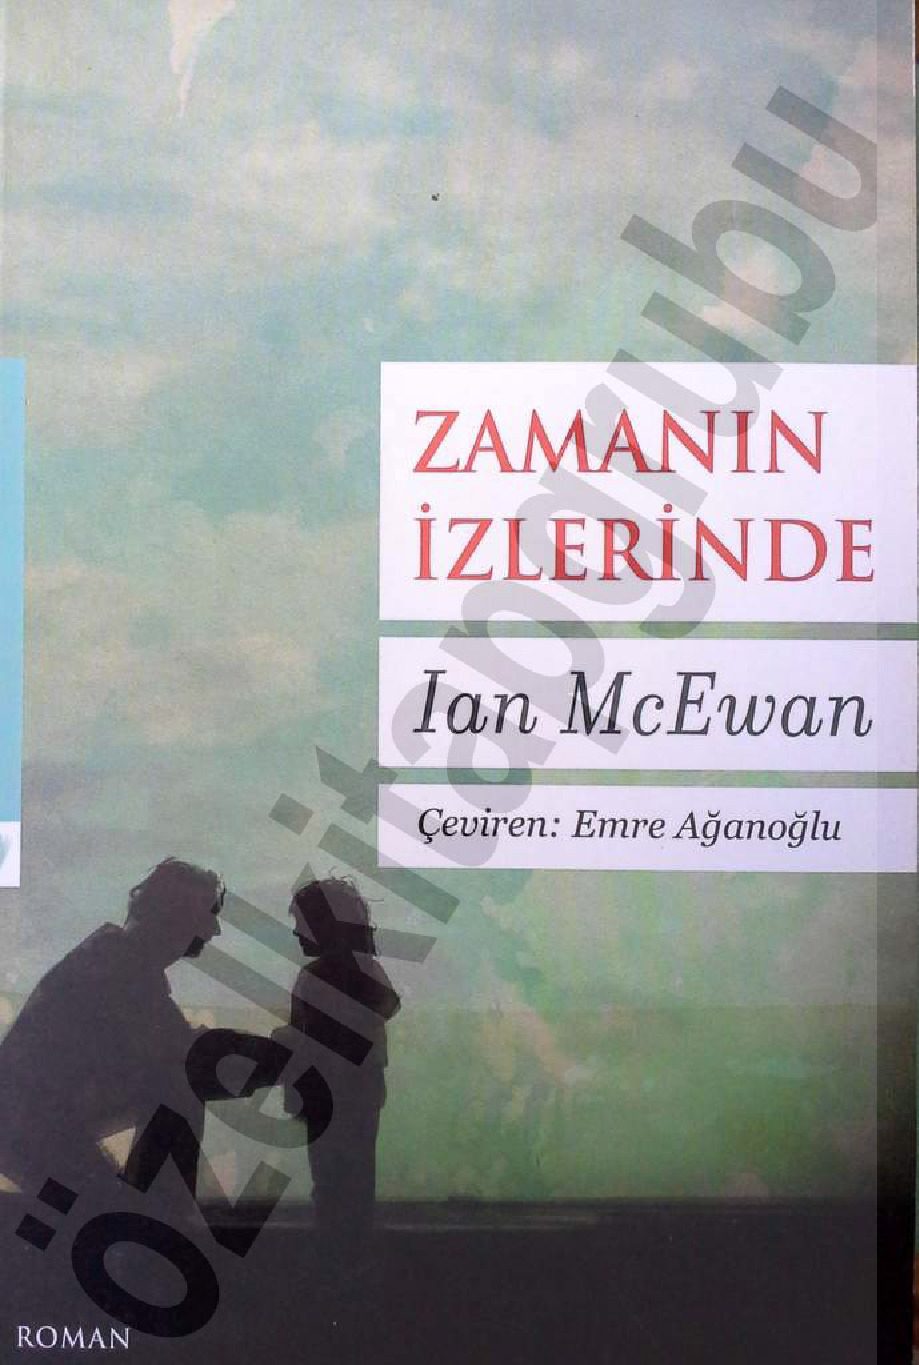 Zamanın Izlerinde-Ian Mcewan-Emre Ağaoğlu-2006-278s